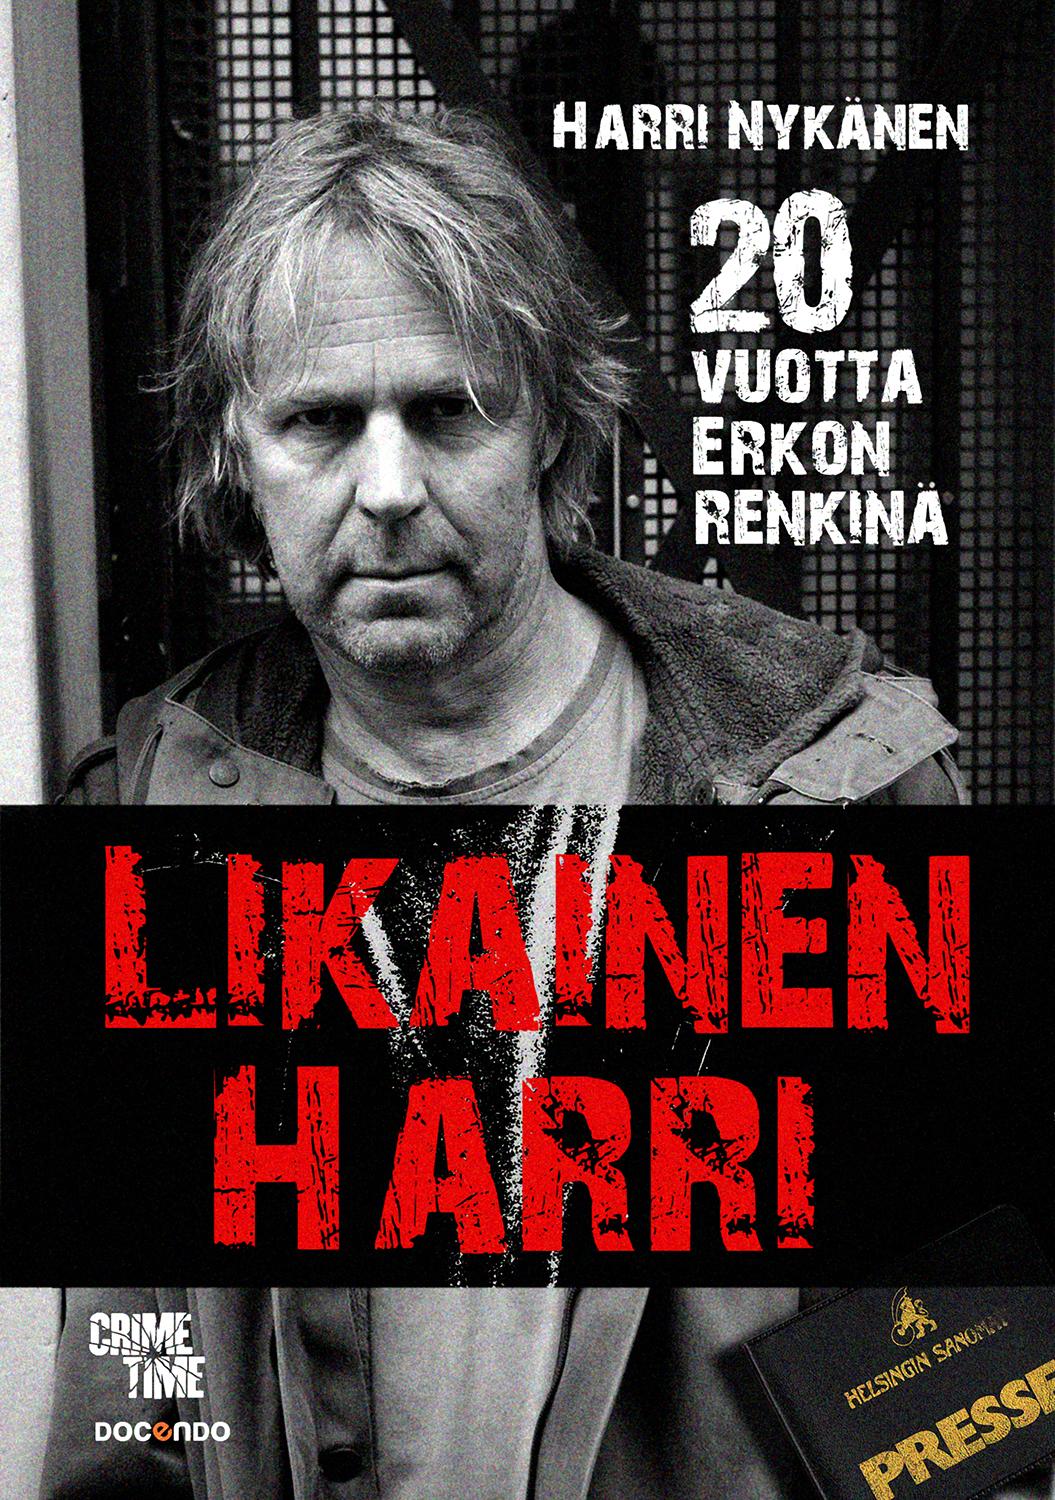 Valokuvaaja Timo Ahola -  - Harri Nykänen - CrimeTime (c) Valokuvaaja Timo Ahola